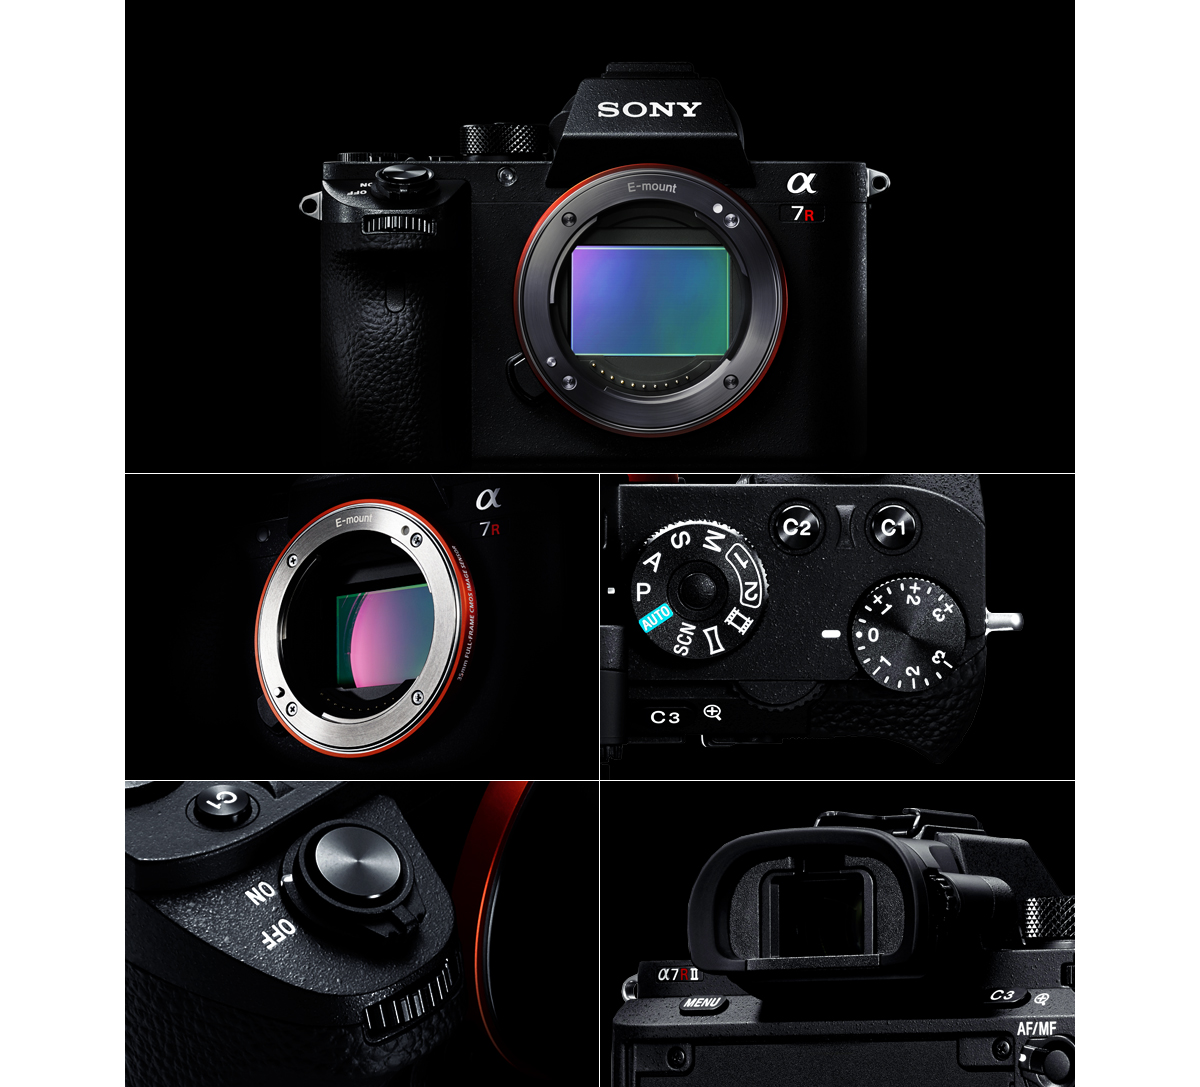 α7R II 特長 : 高い操作性と信頼性を実現 | デジタル一眼カメラα（アルファ） | ソニー